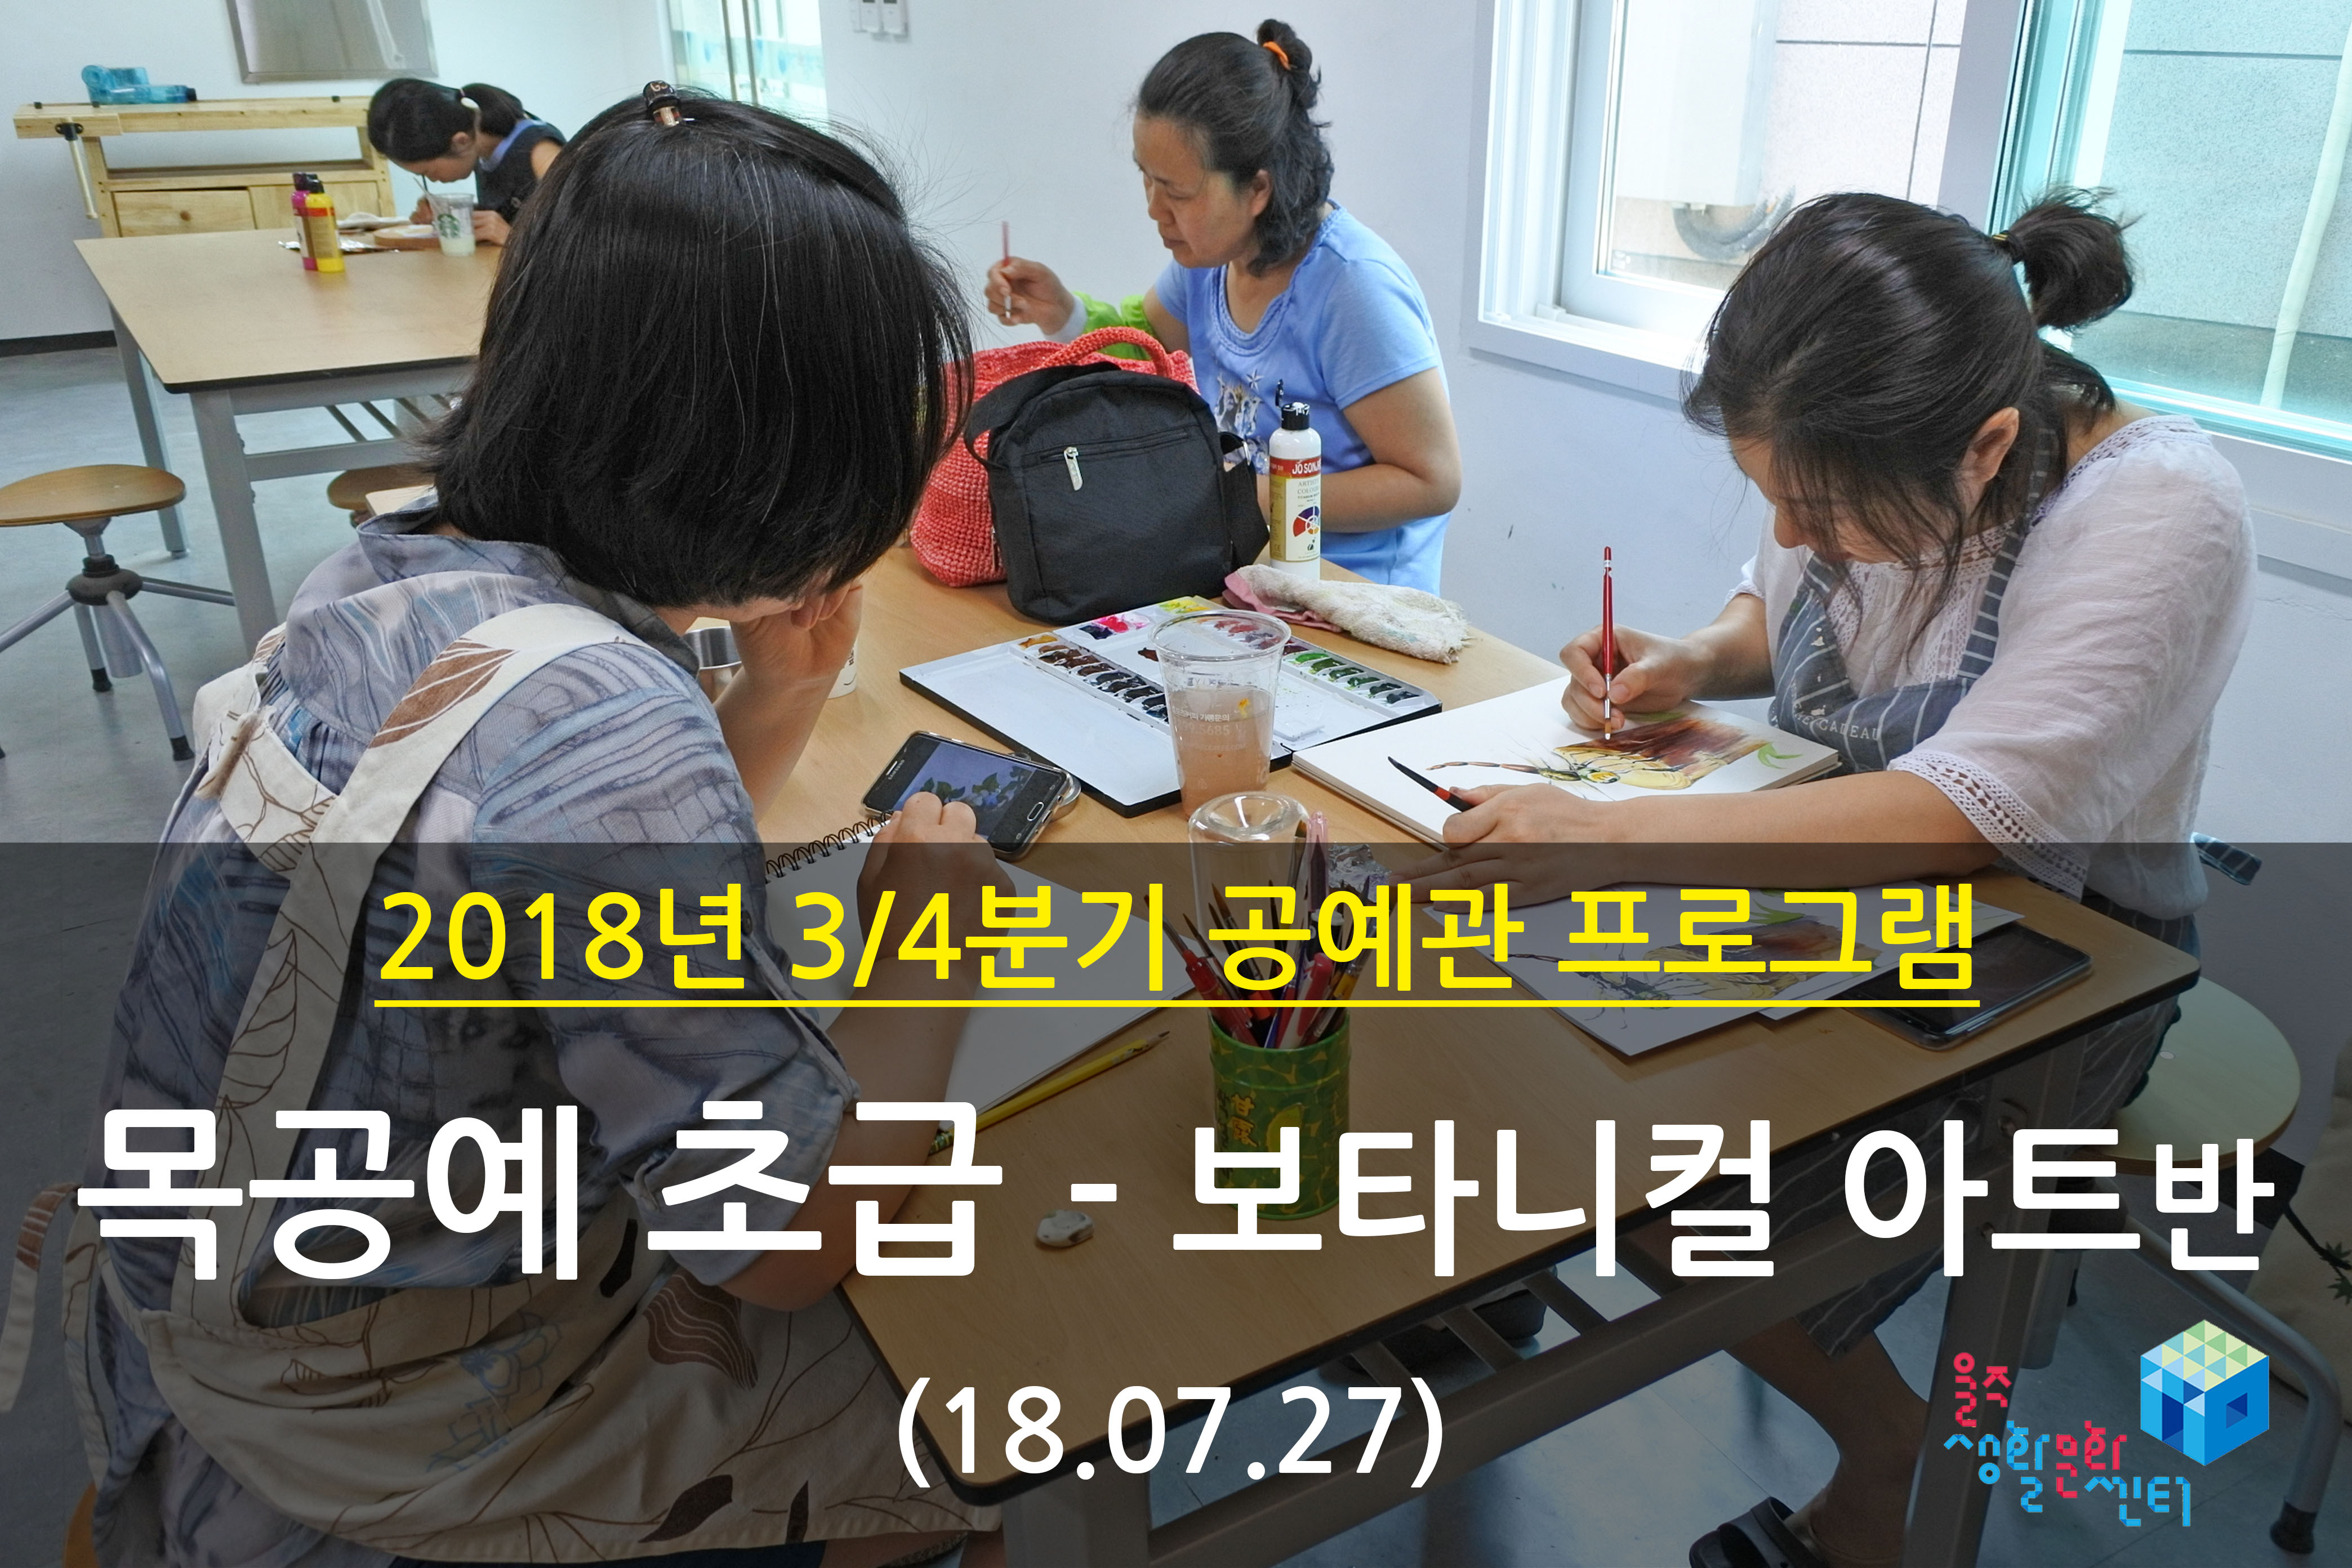 2018.07.27 _ 목공예 초급 - 보타니컬 아트반 _ 3/4분기 4주차 수업